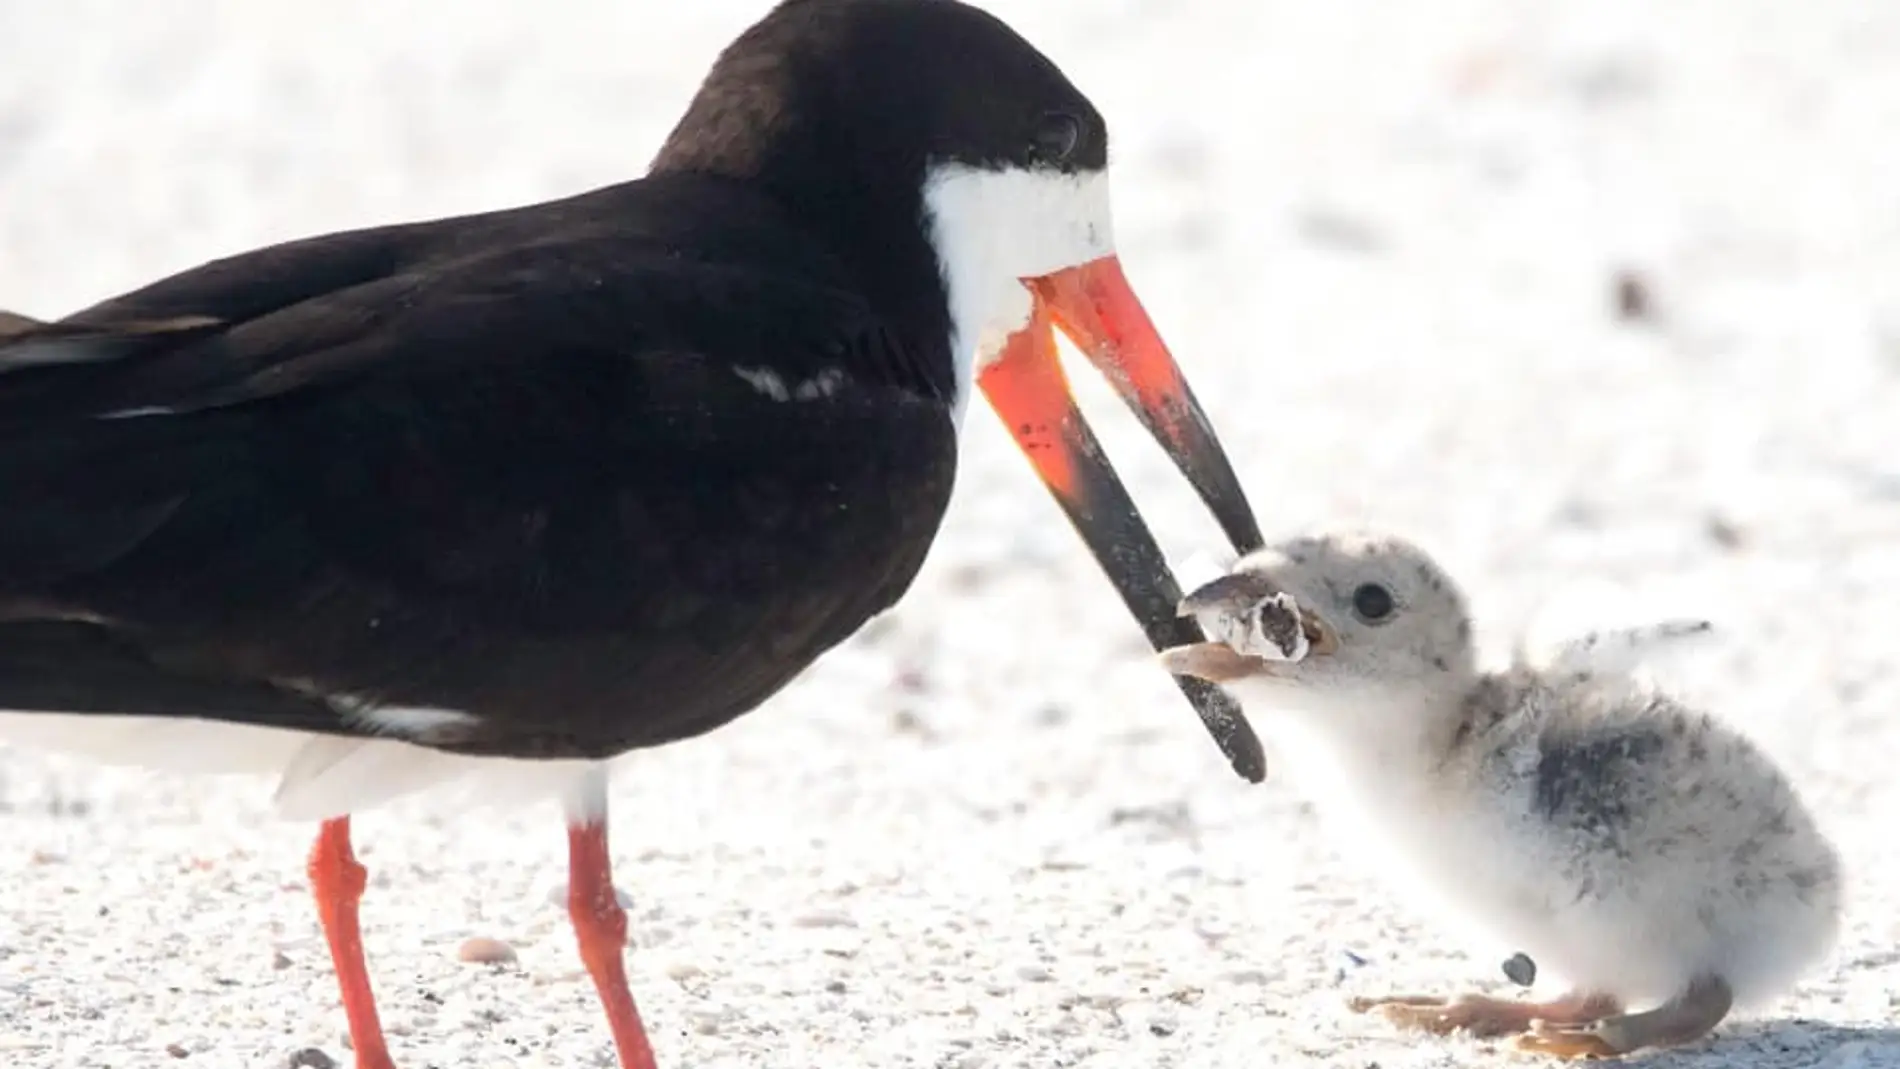 Imagen captada en una playa de Florida de un ave alimentando a su cría con una colilla de cigarro.